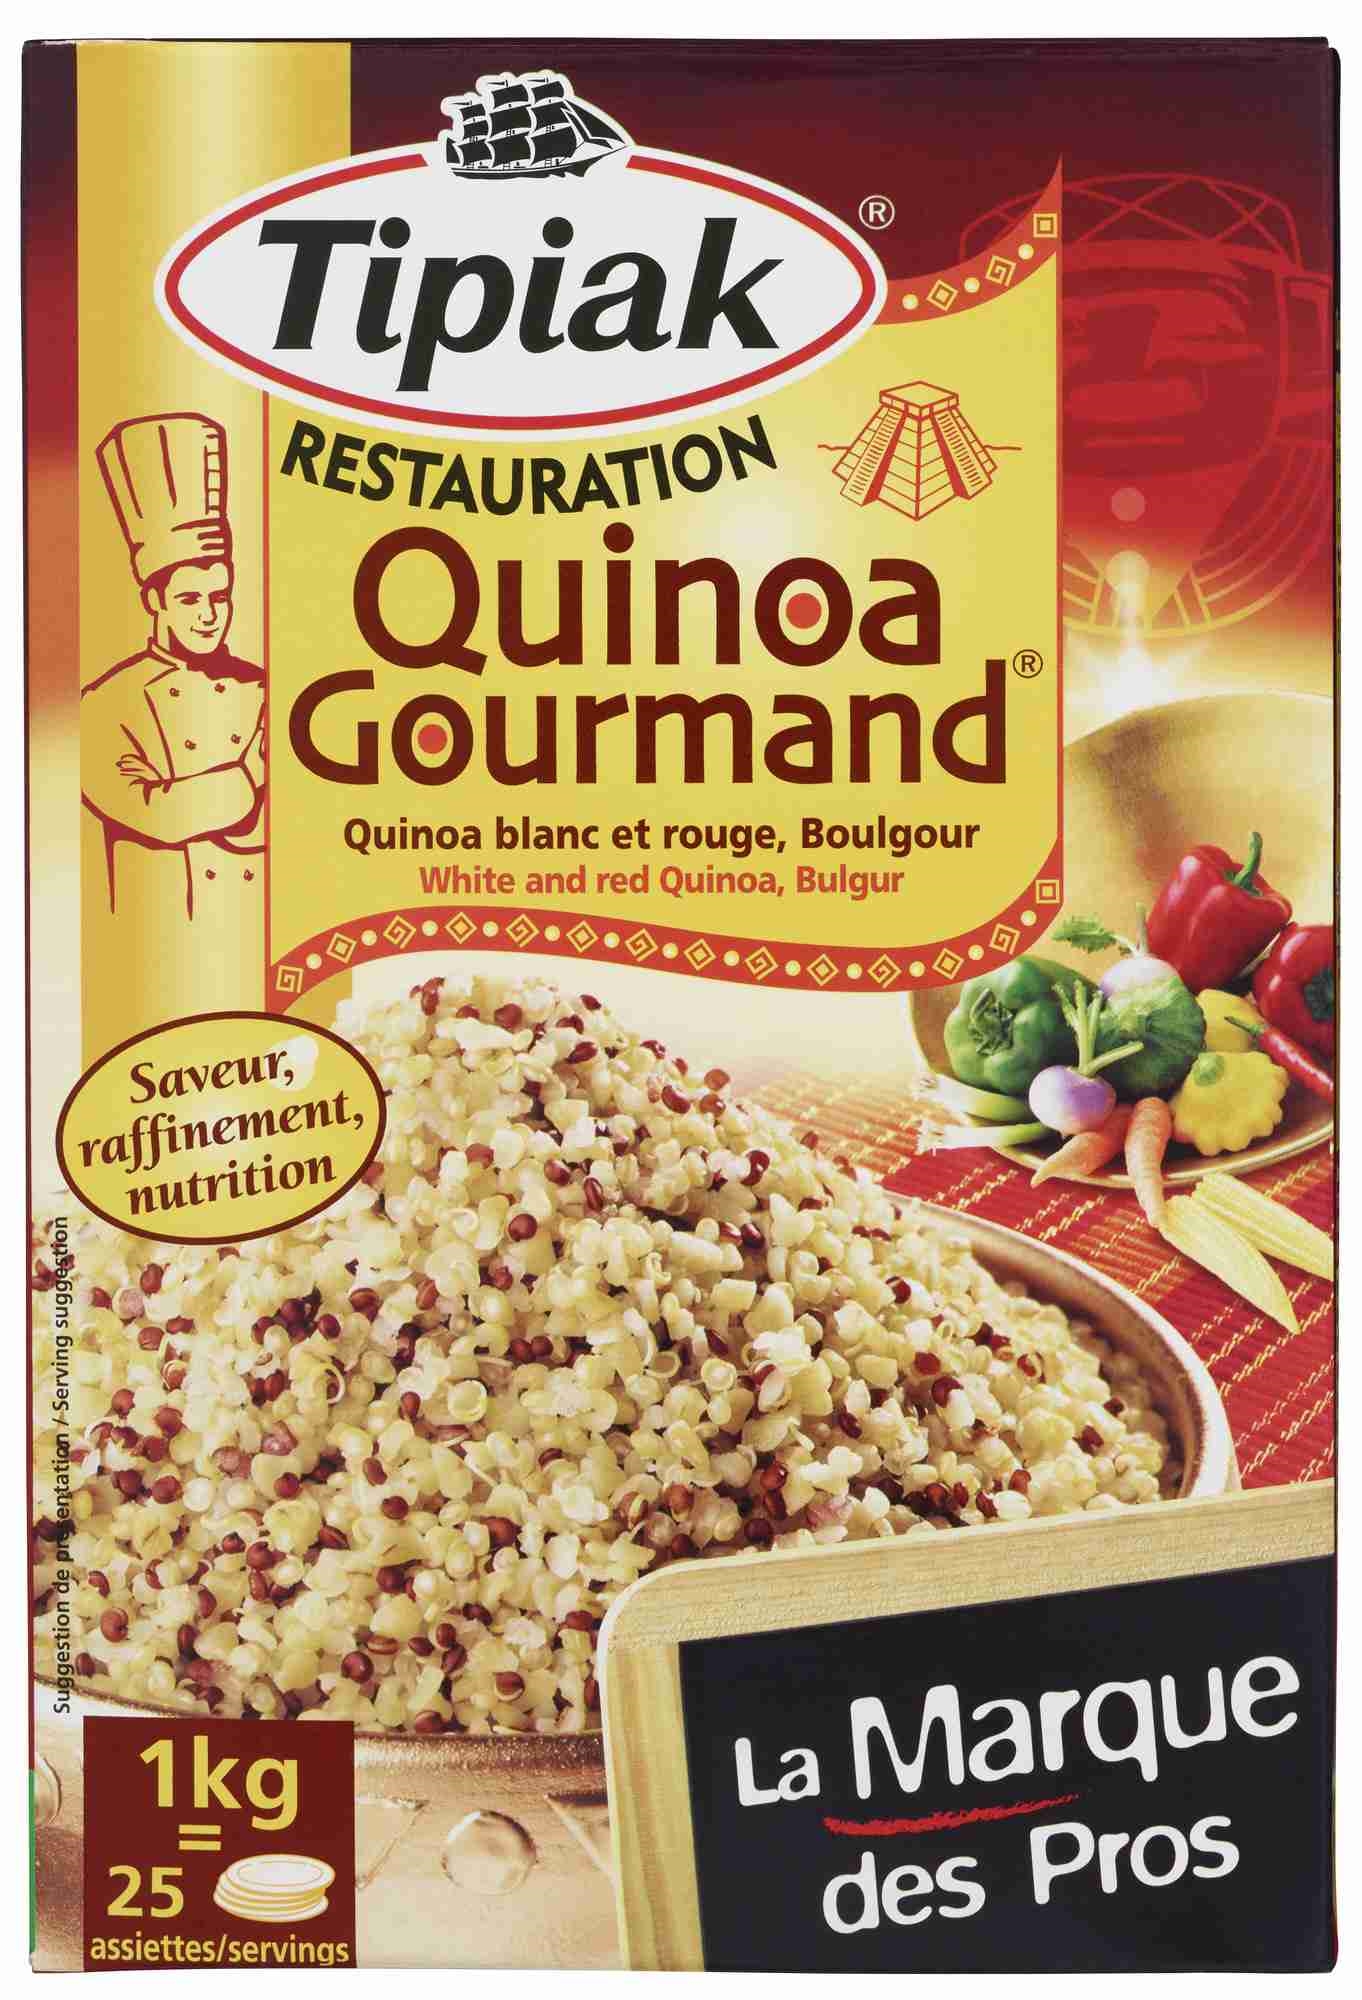 Quinoa gourmand   1kg